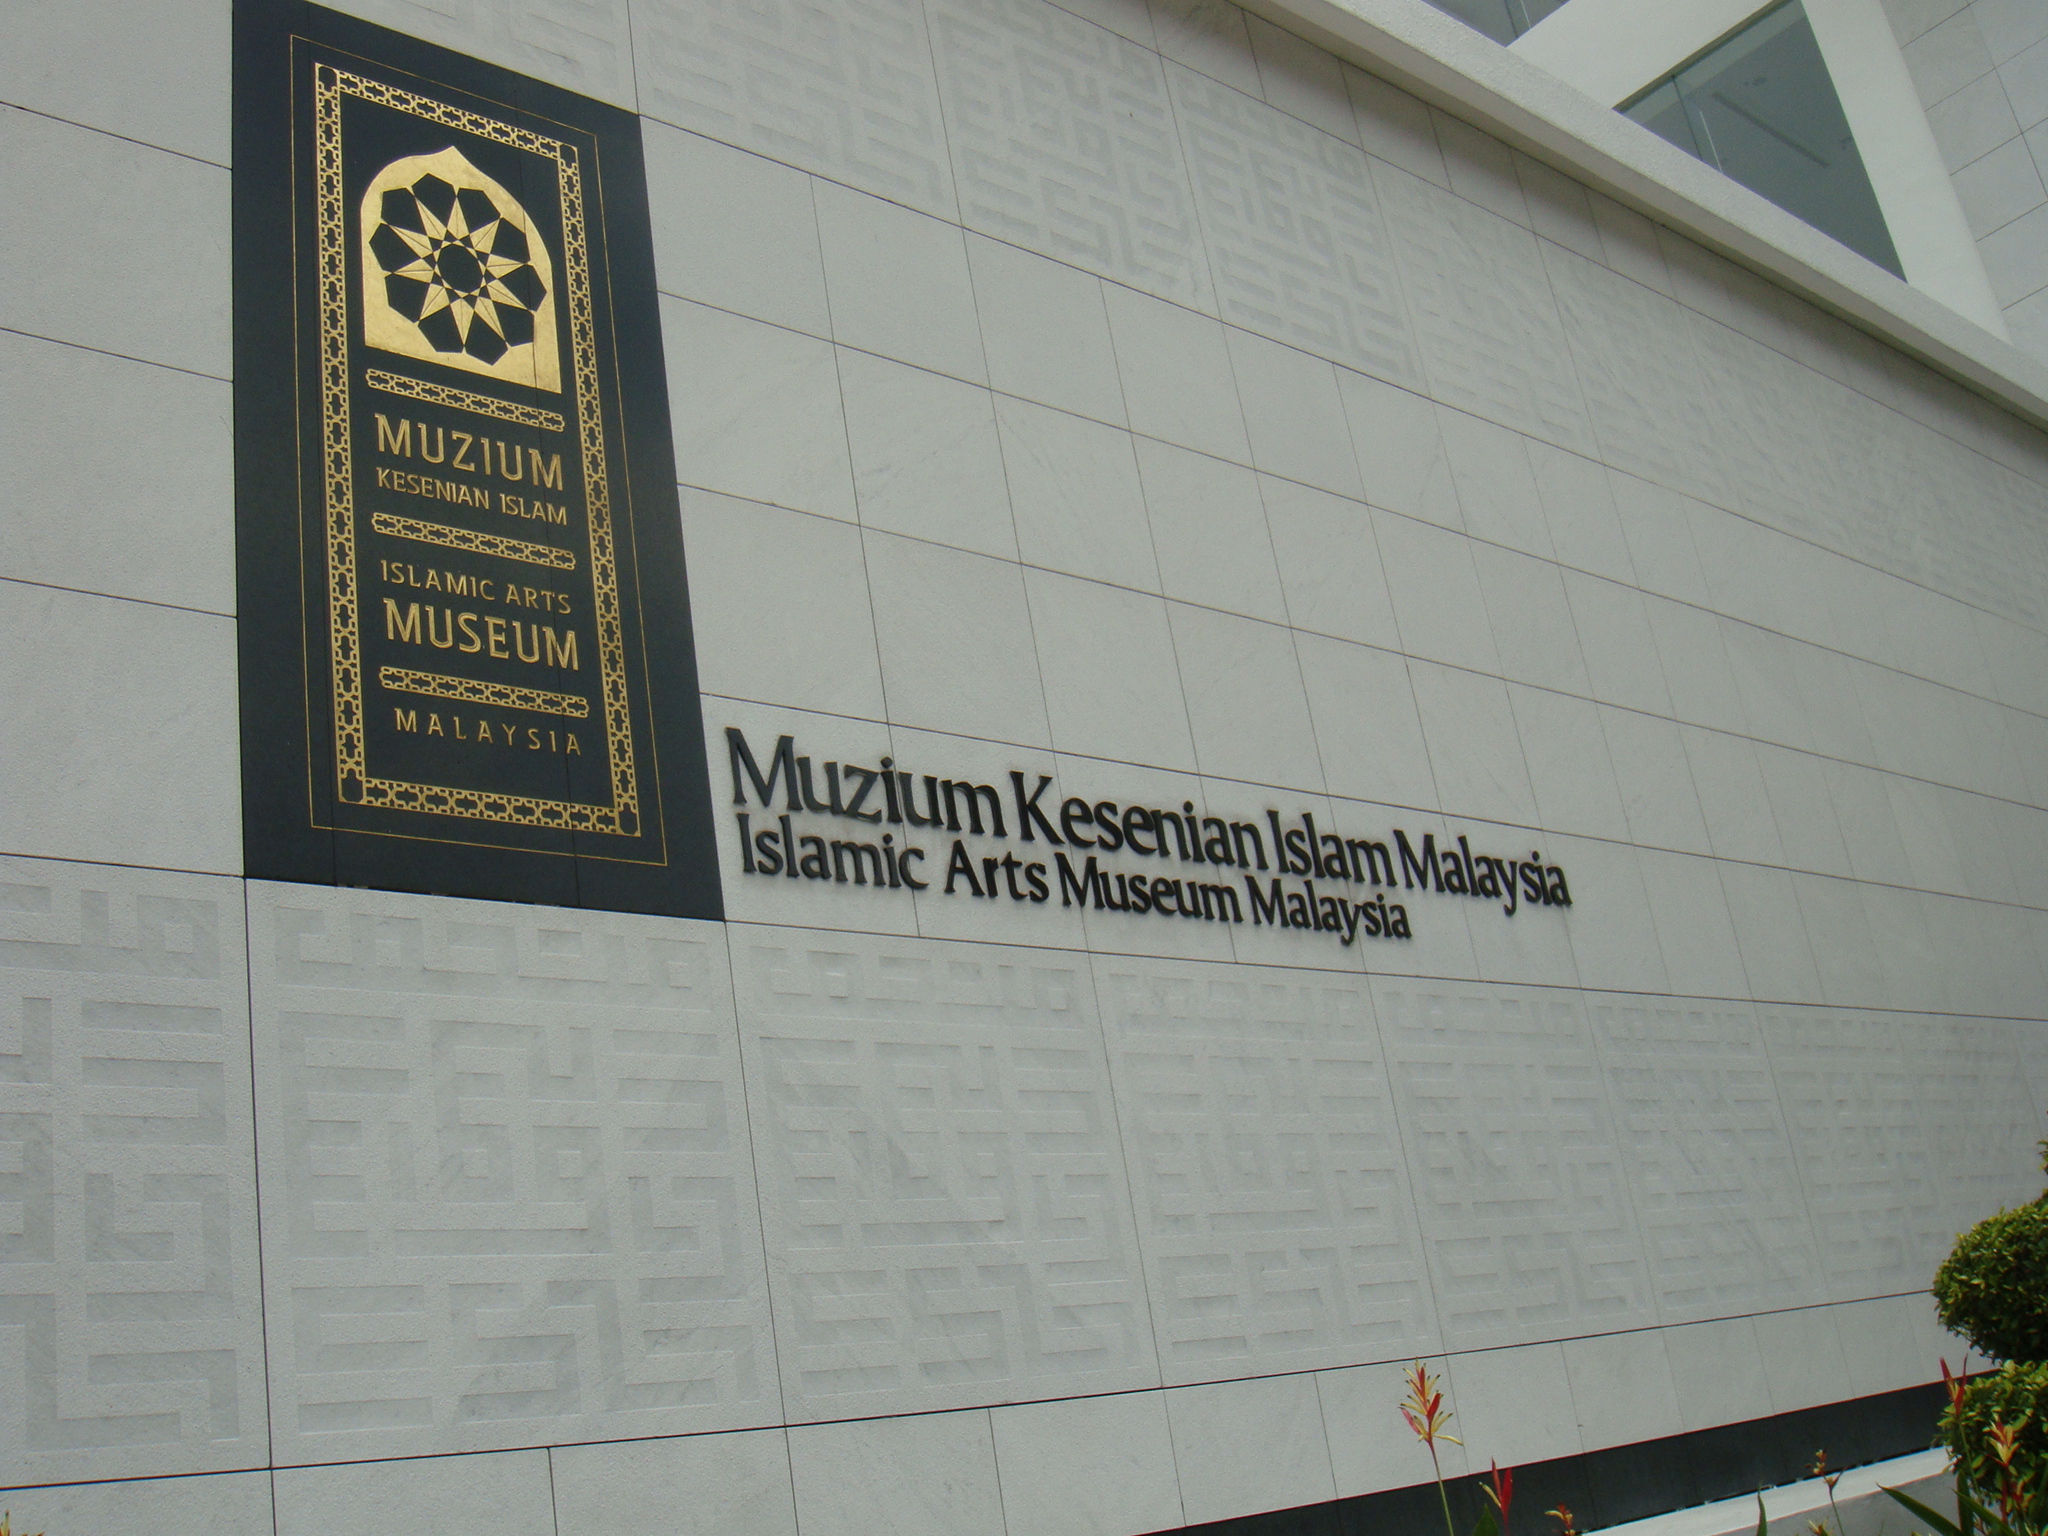 吉隆坡伊斯蘭藝術博物館外牆